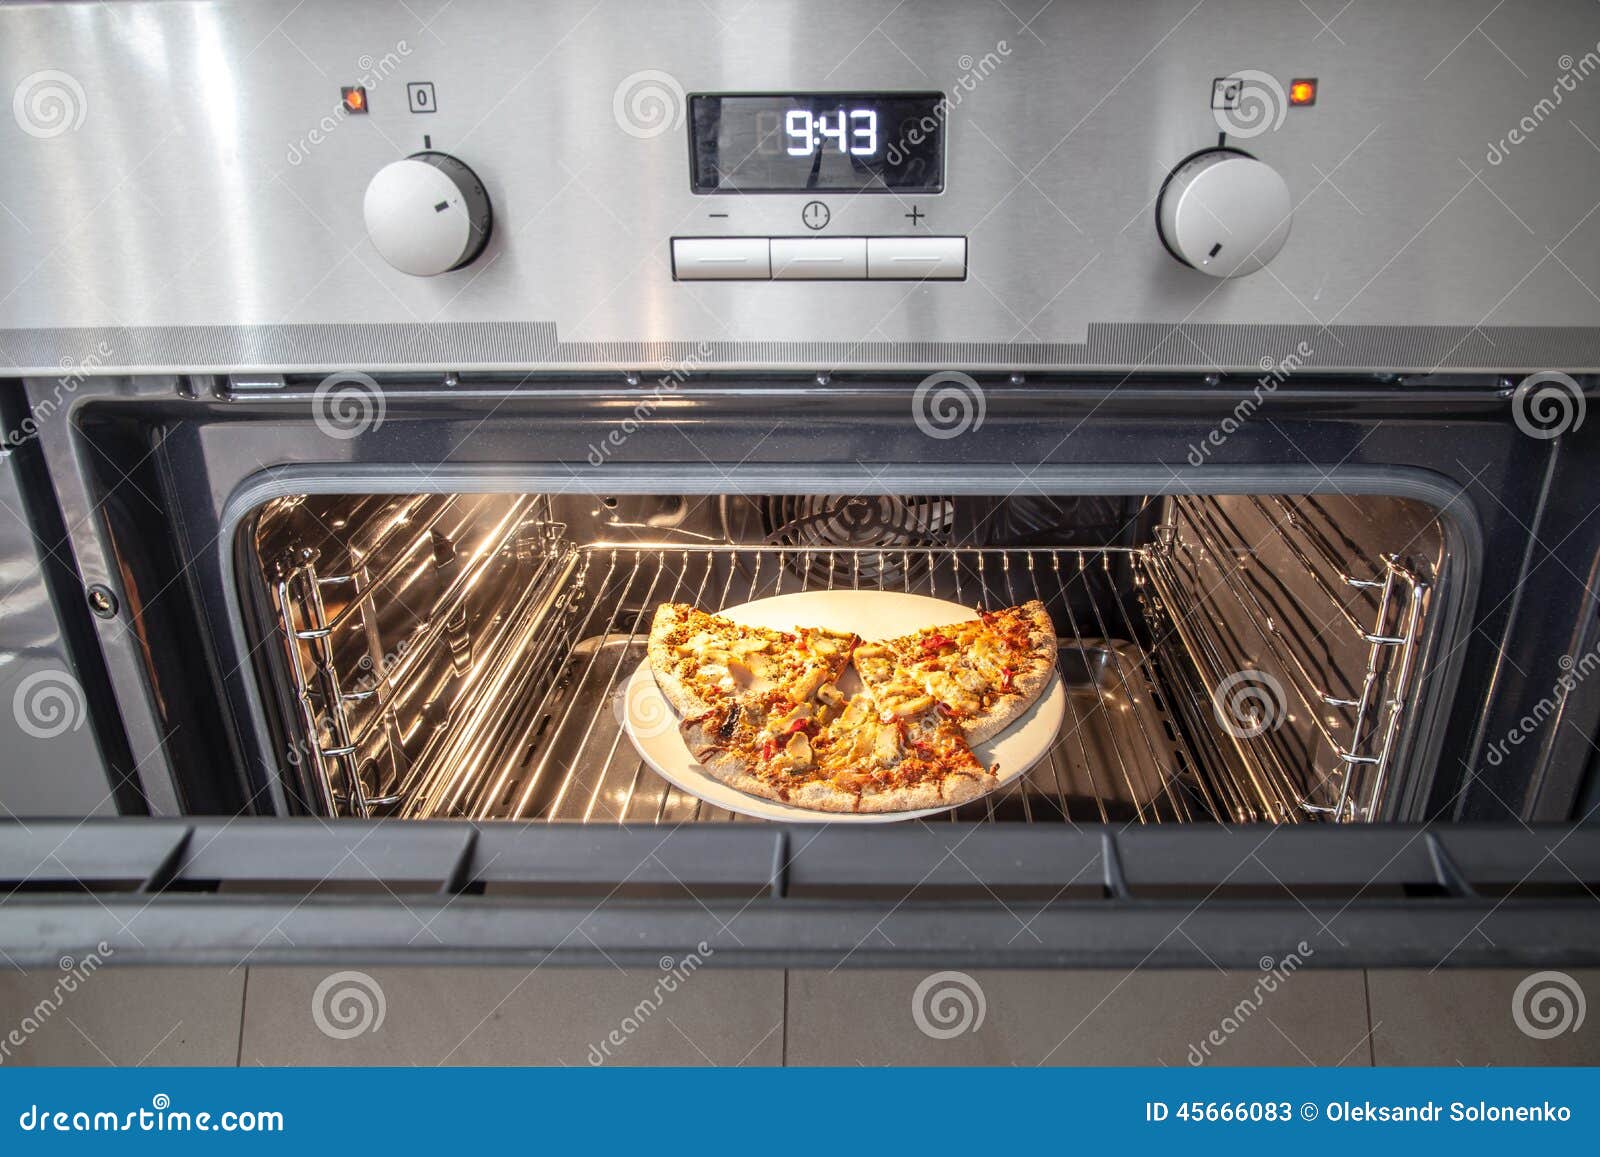 что такое режим пицца в духовке бош фото 95